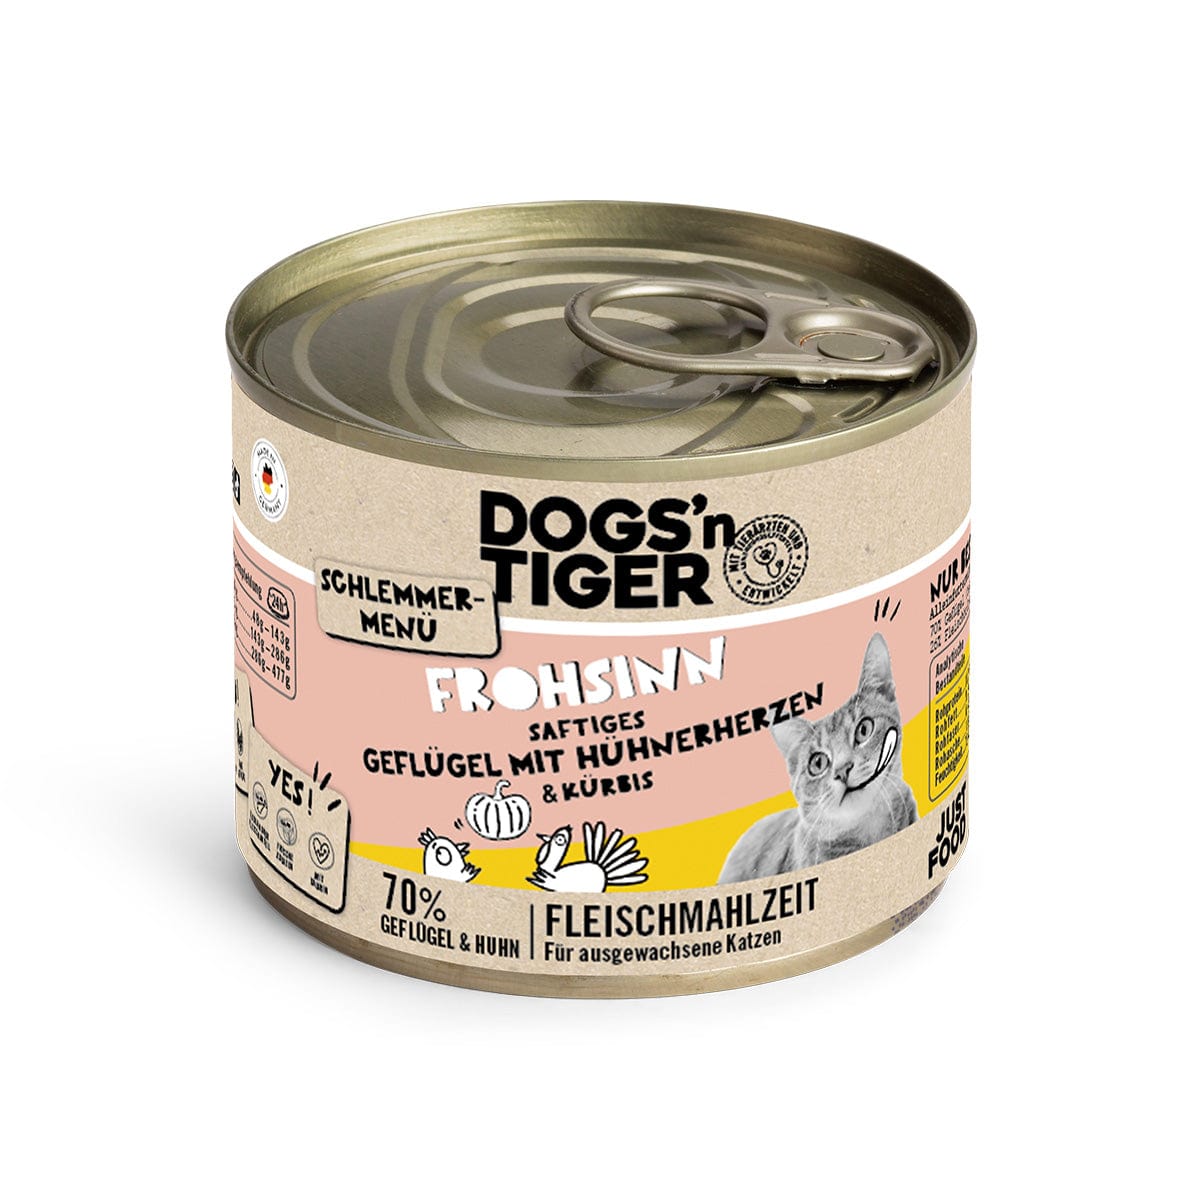 Tiger - Schlemmerpaket